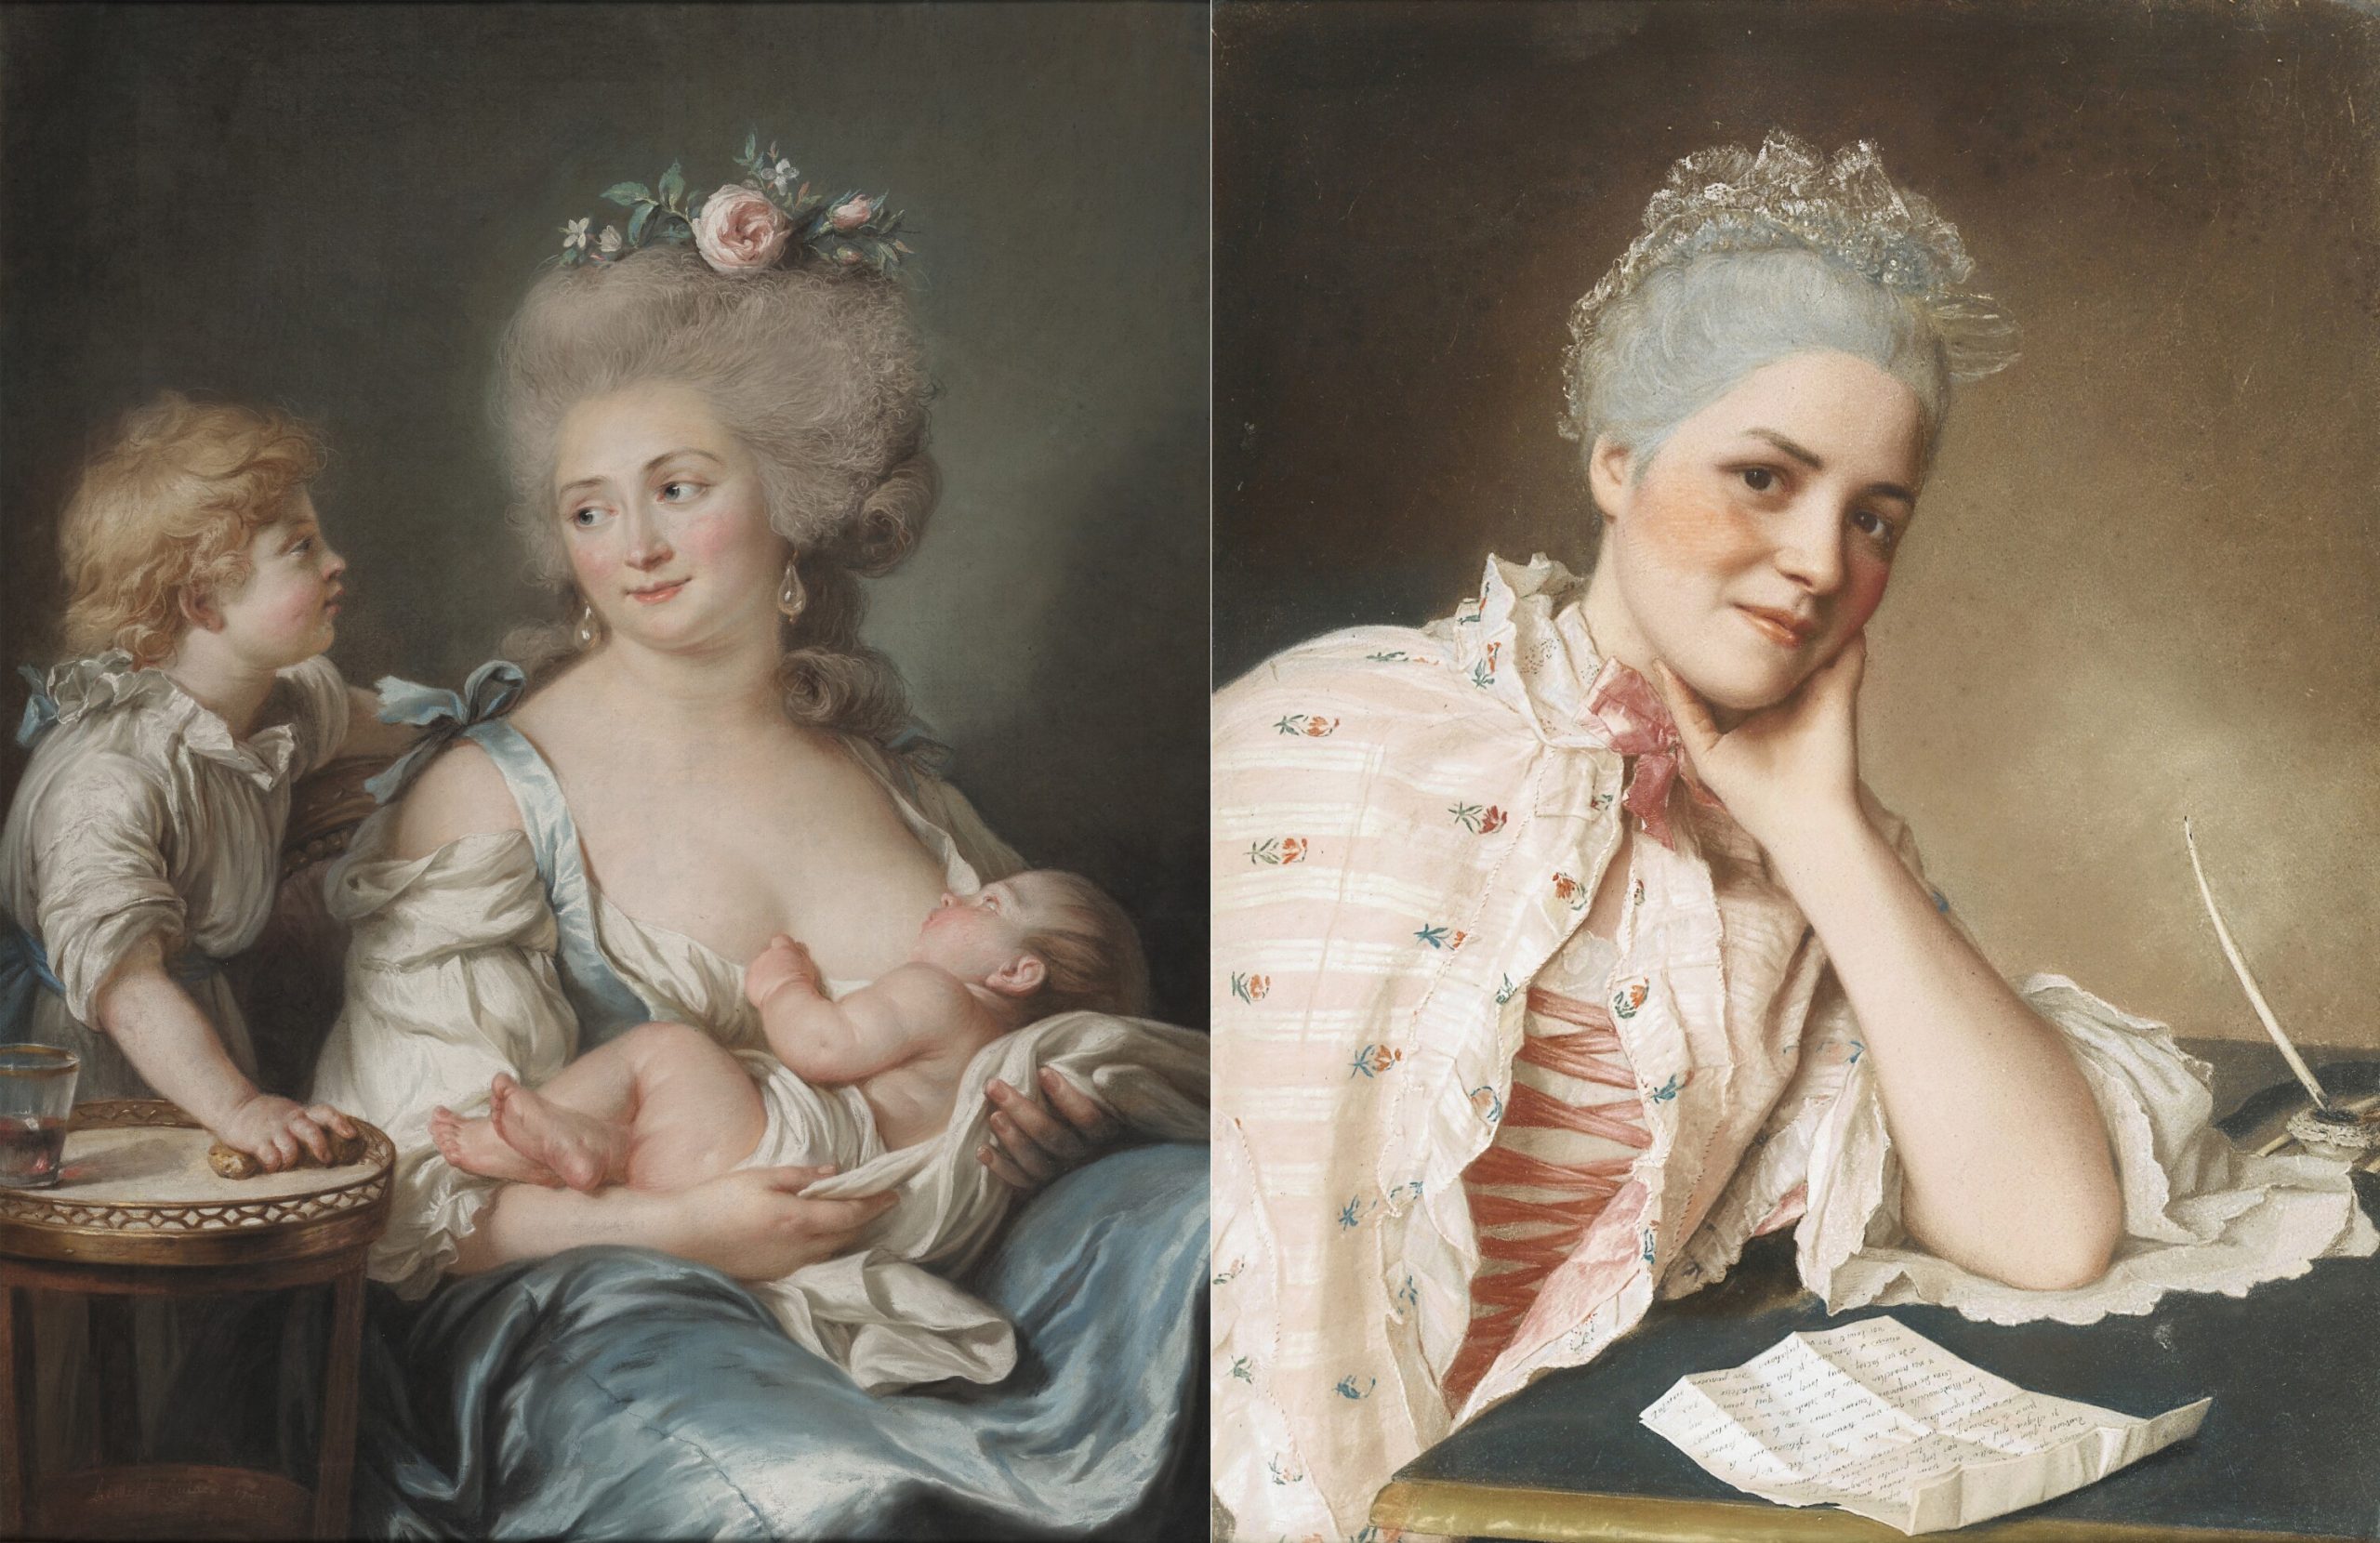 Come cambia la ritrattistica a pastello nel XVIII secolo? Il Getty Museum prova a raccontarlo in una mostra